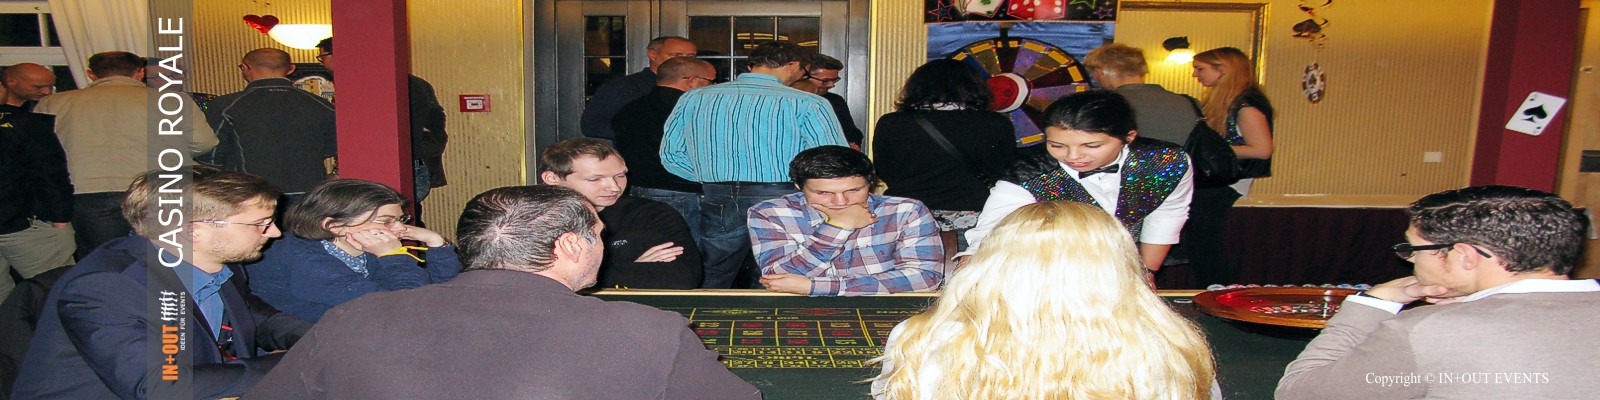 Casino Spieltisch Roulette